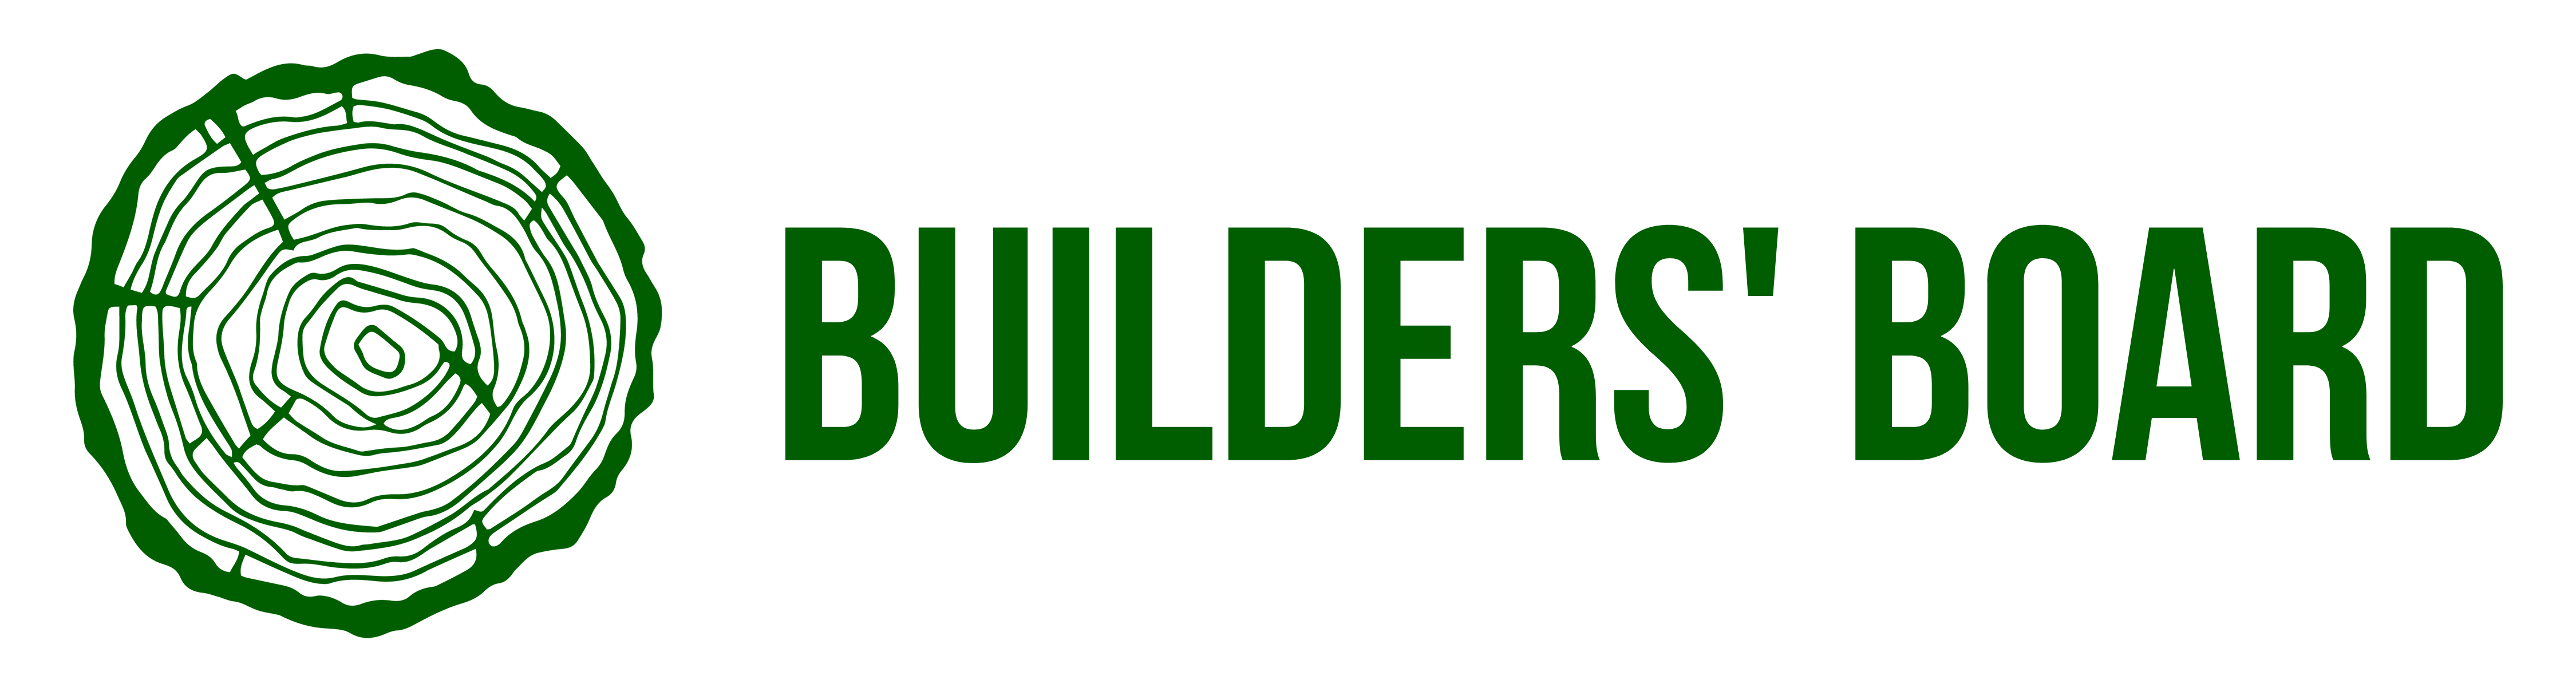 Builders' Board